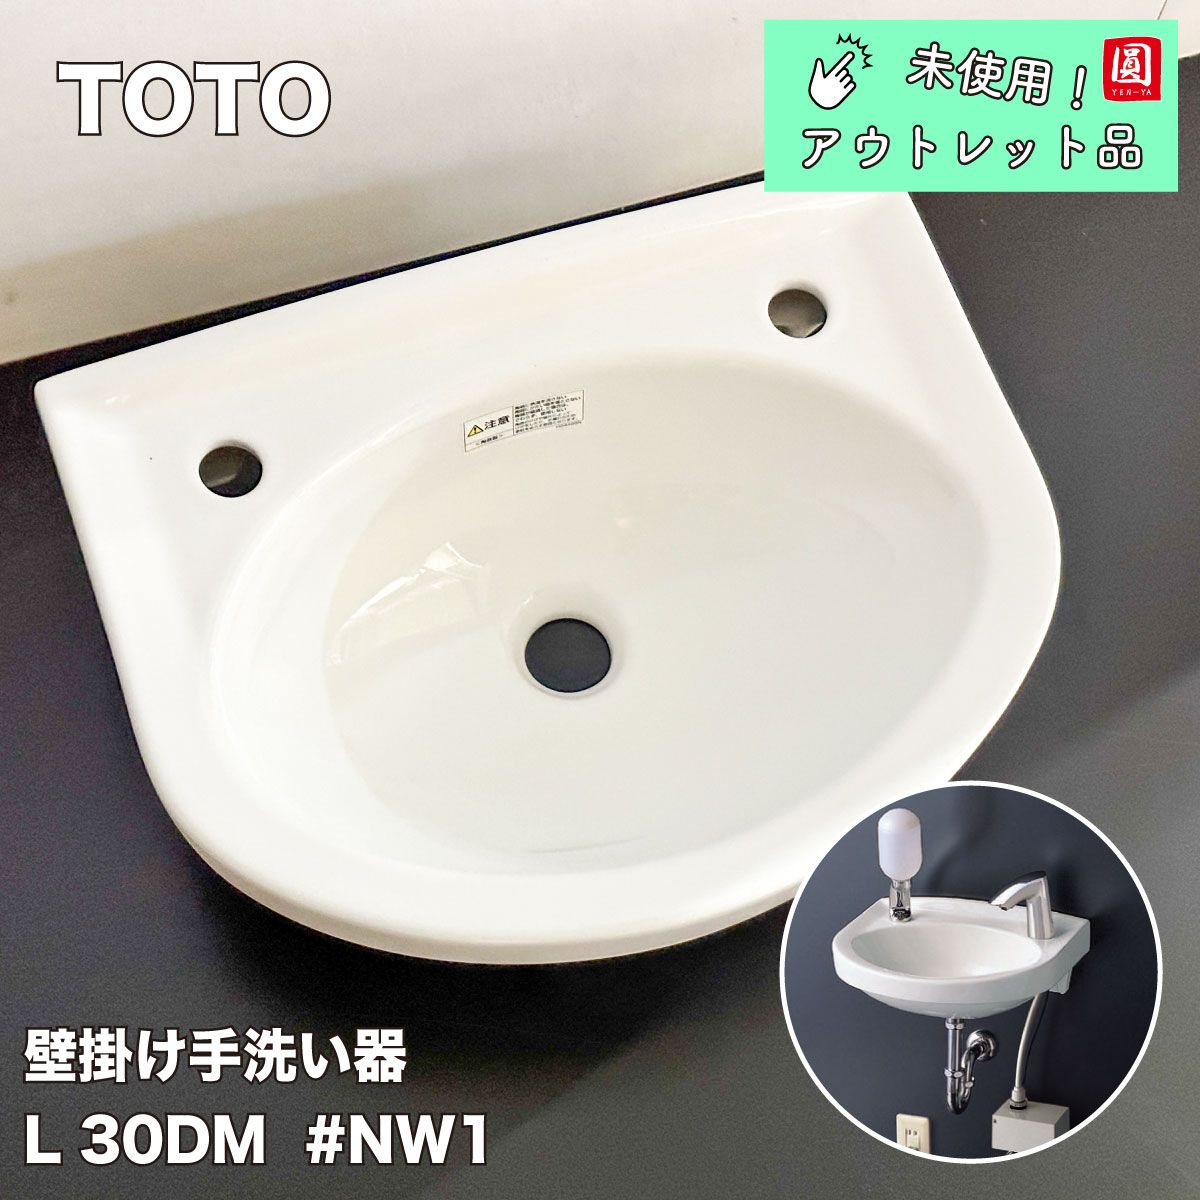 TOTO 壁掛手洗器 L30DM#NW1(水栓・石鹸入れは別売り) - アウトレット